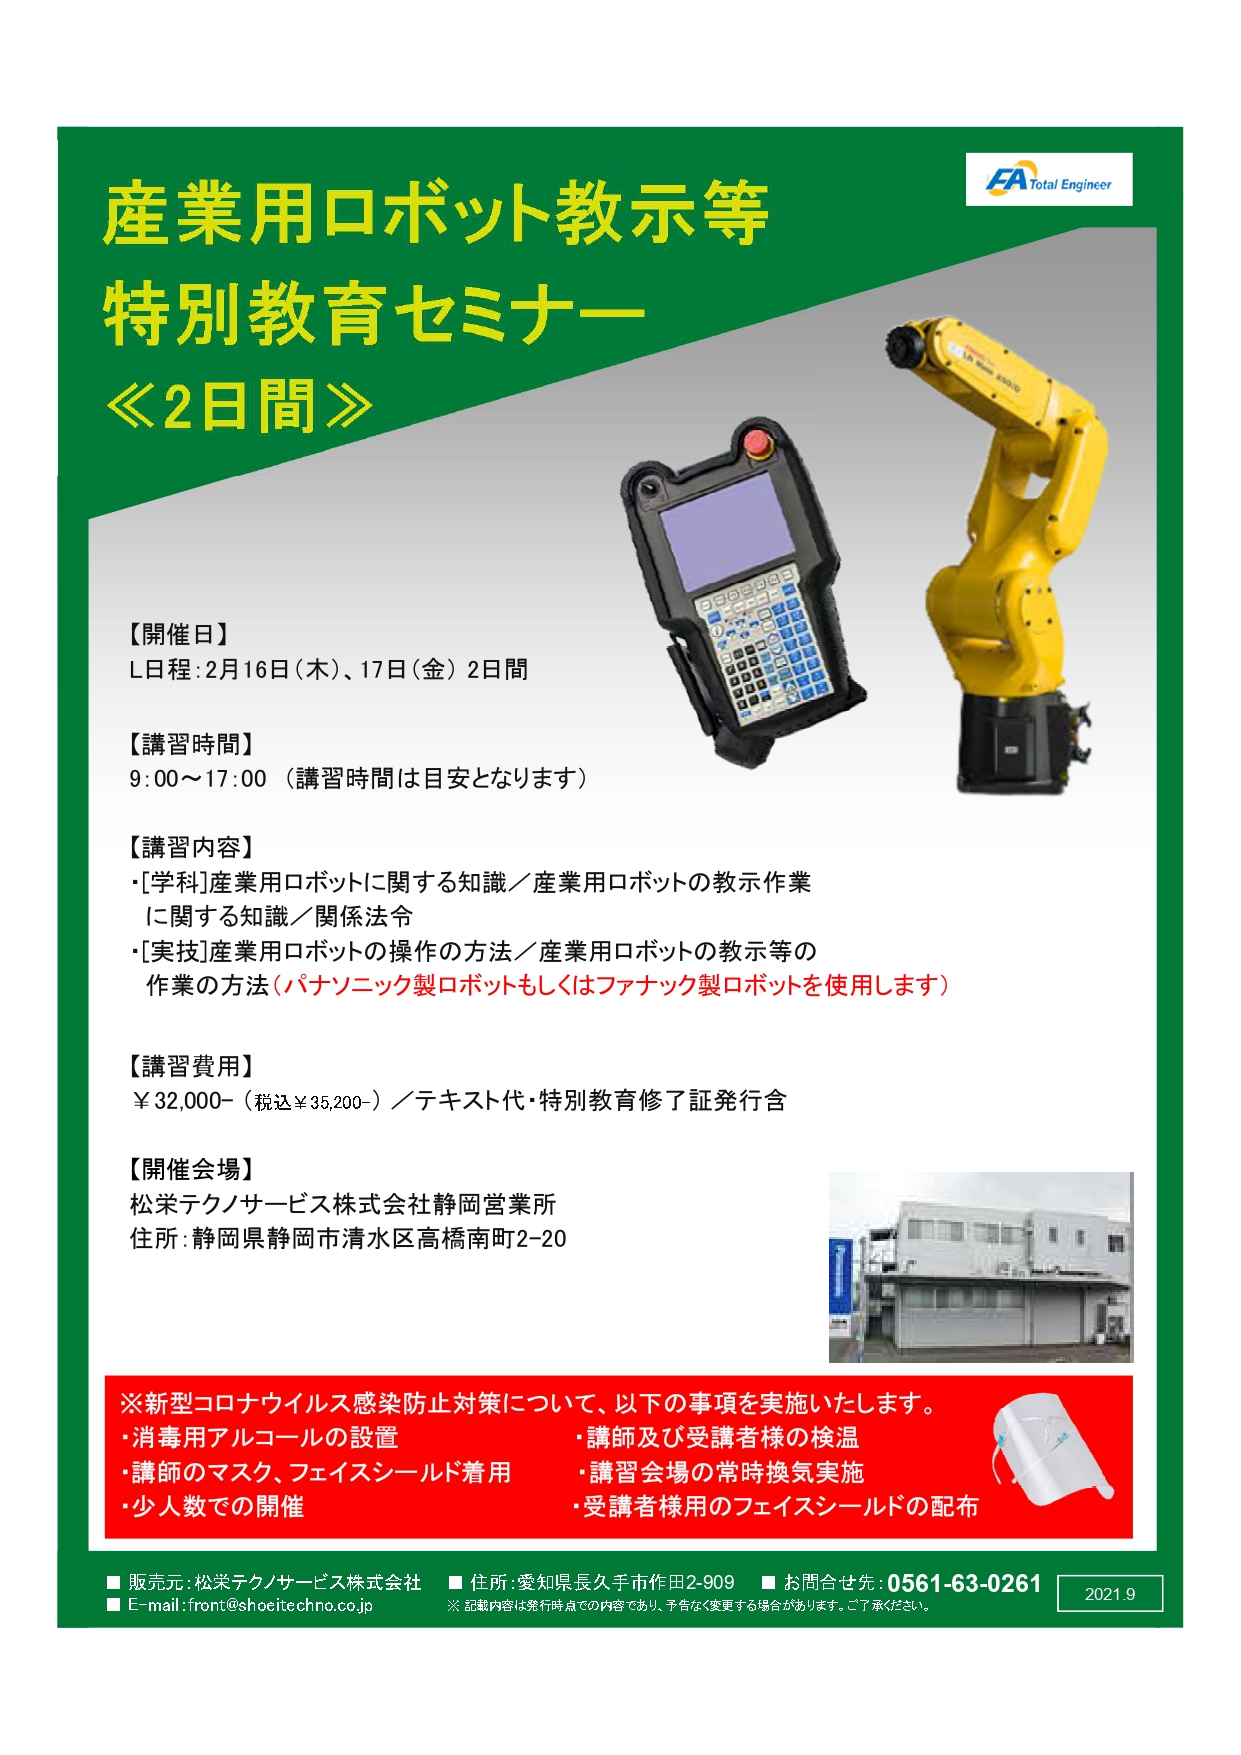 【終了しました】産業用ロボット特別教育（教示等）静岡会場開催のお知らせ【2022年2月】